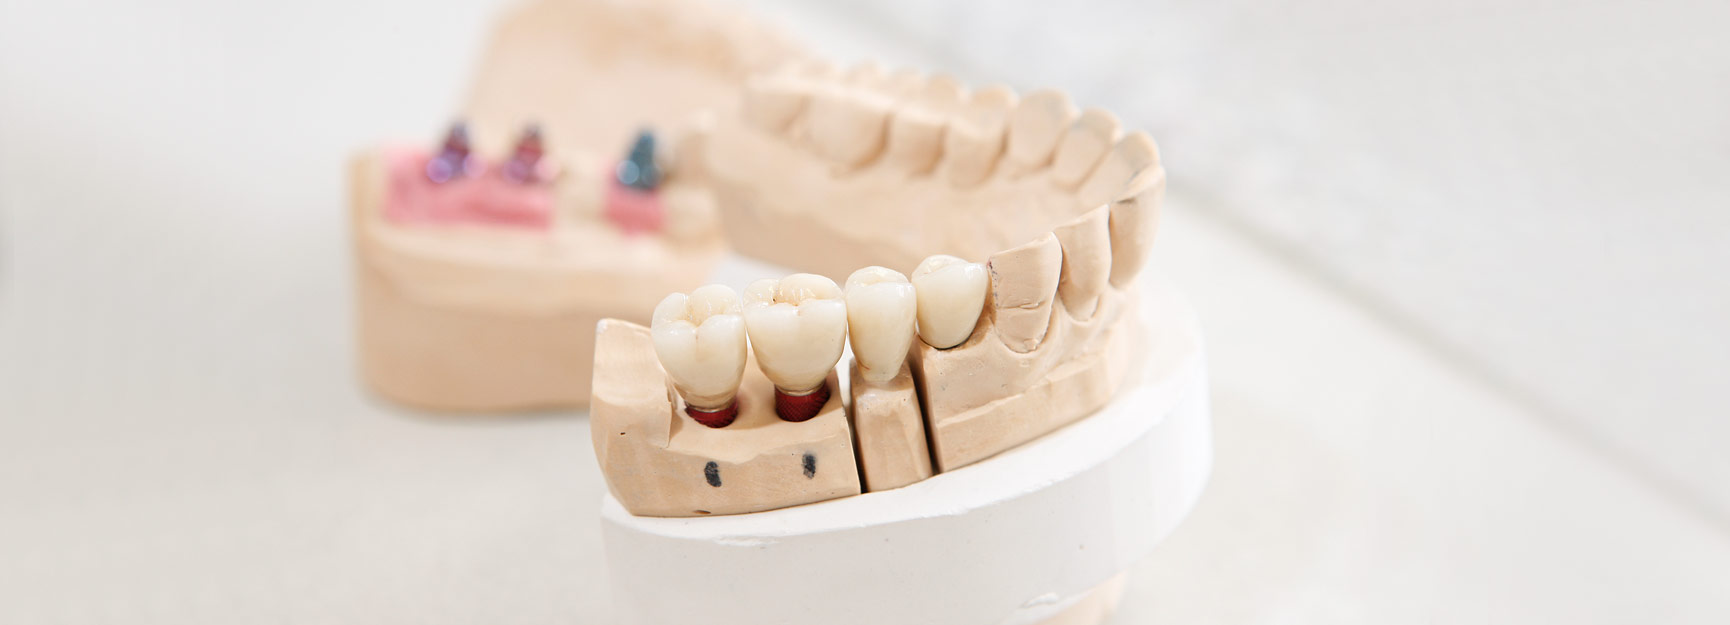 Implantologie in der Zahnarztpraxis in Aldenhoven